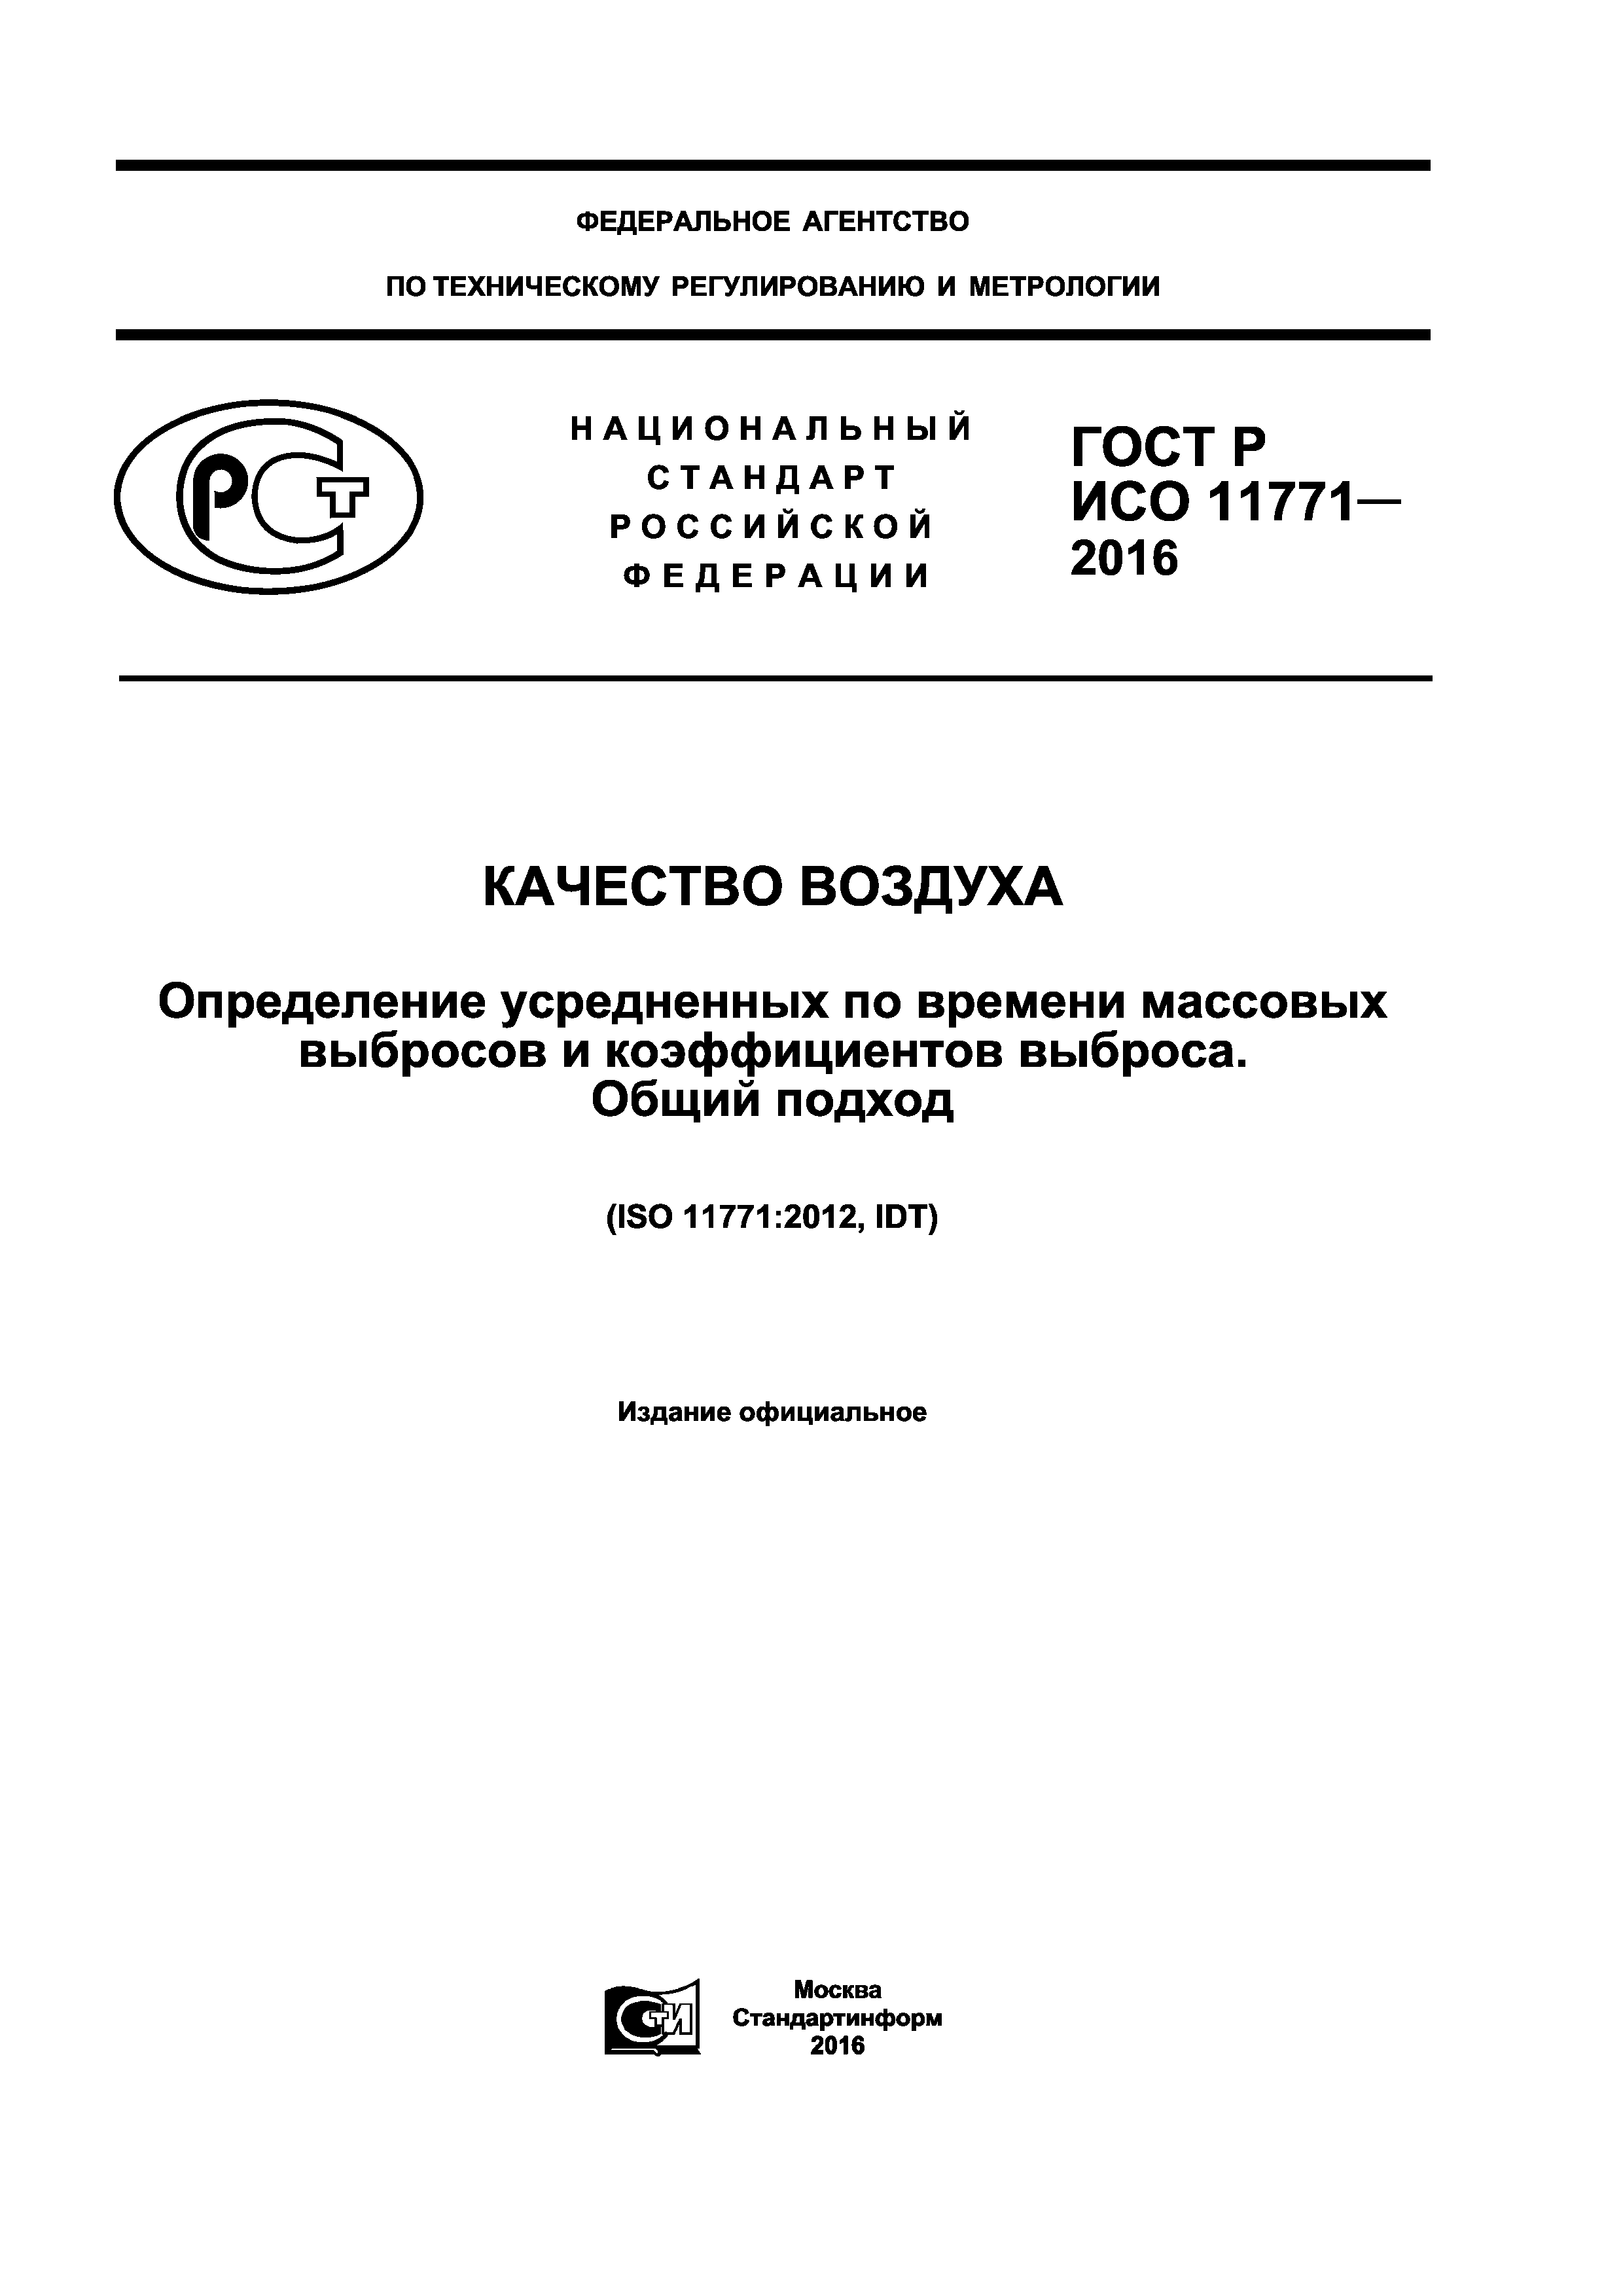 ГОСТ Р ИСО 11771-2016